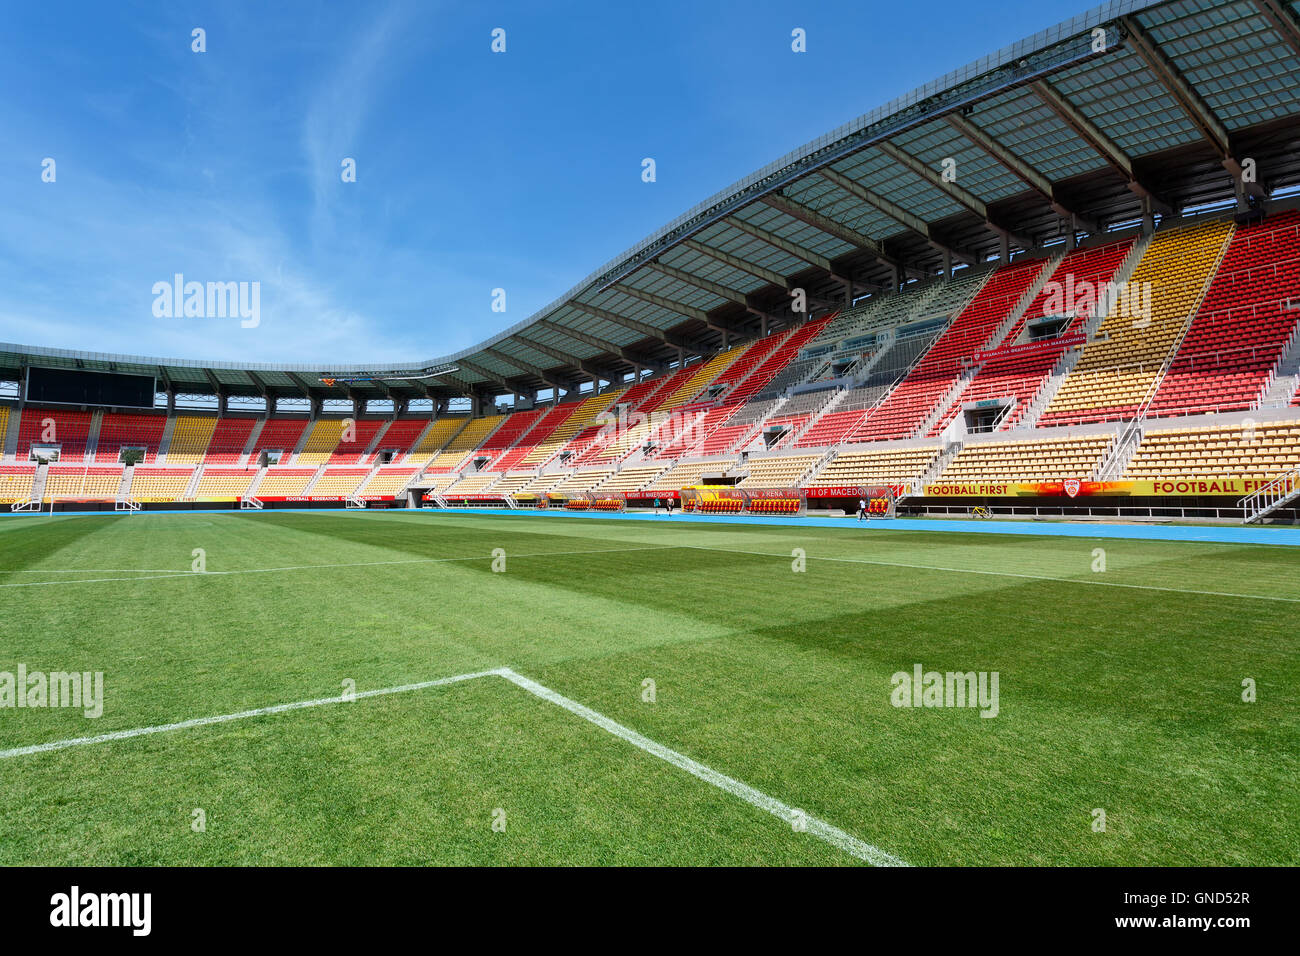 Skopje, Mazedonien - 5. Mai 2015: Fußball-Stadion, genannt Arena Philip II. von Makedonien Stockfoto